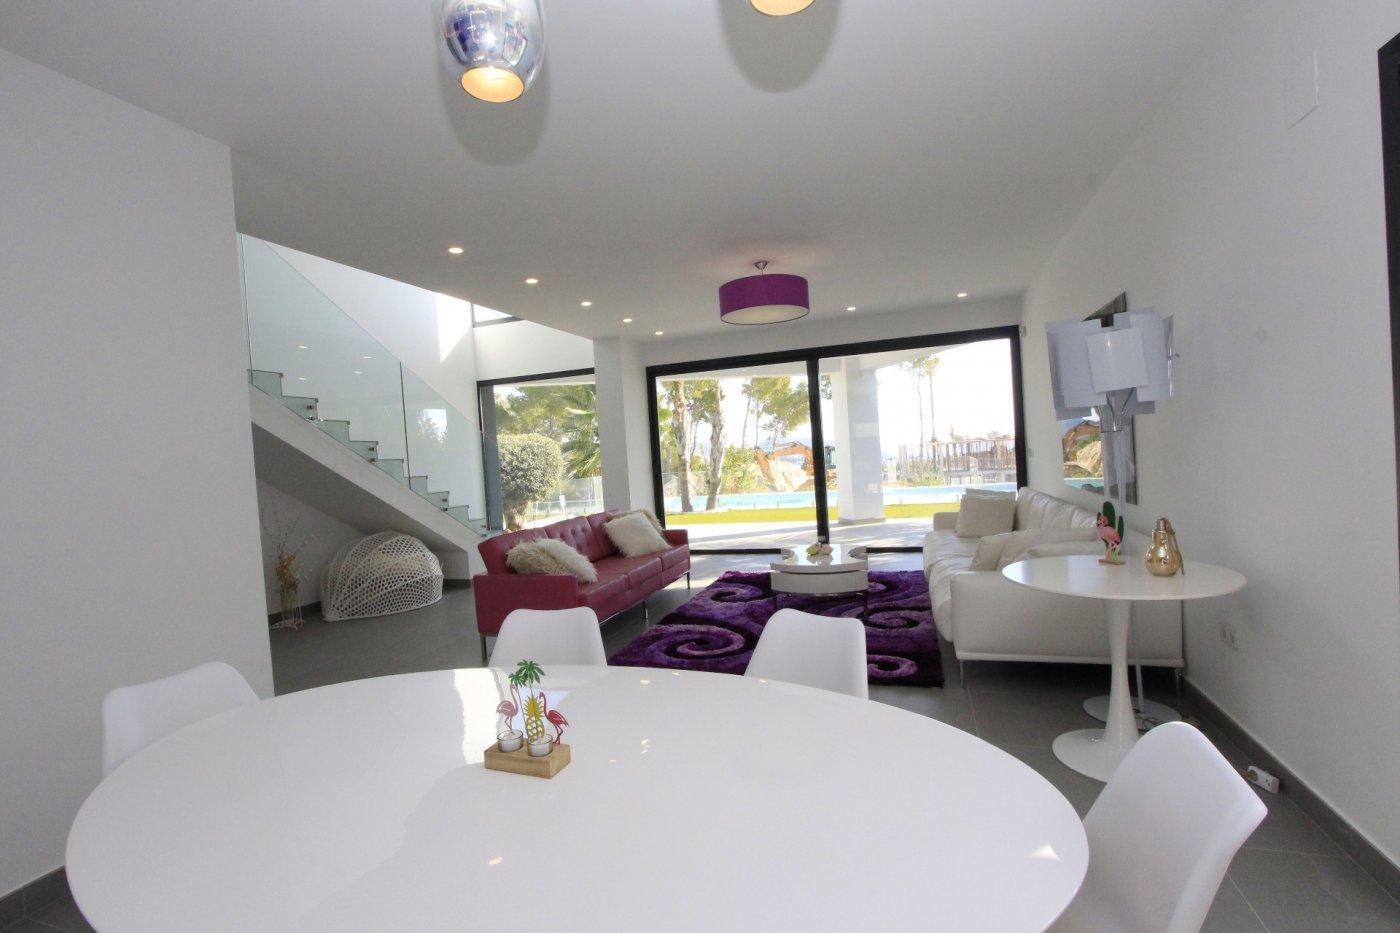 Villa moderna ubicada en zona tranquila, cerca del centro y de las playas de Moraira